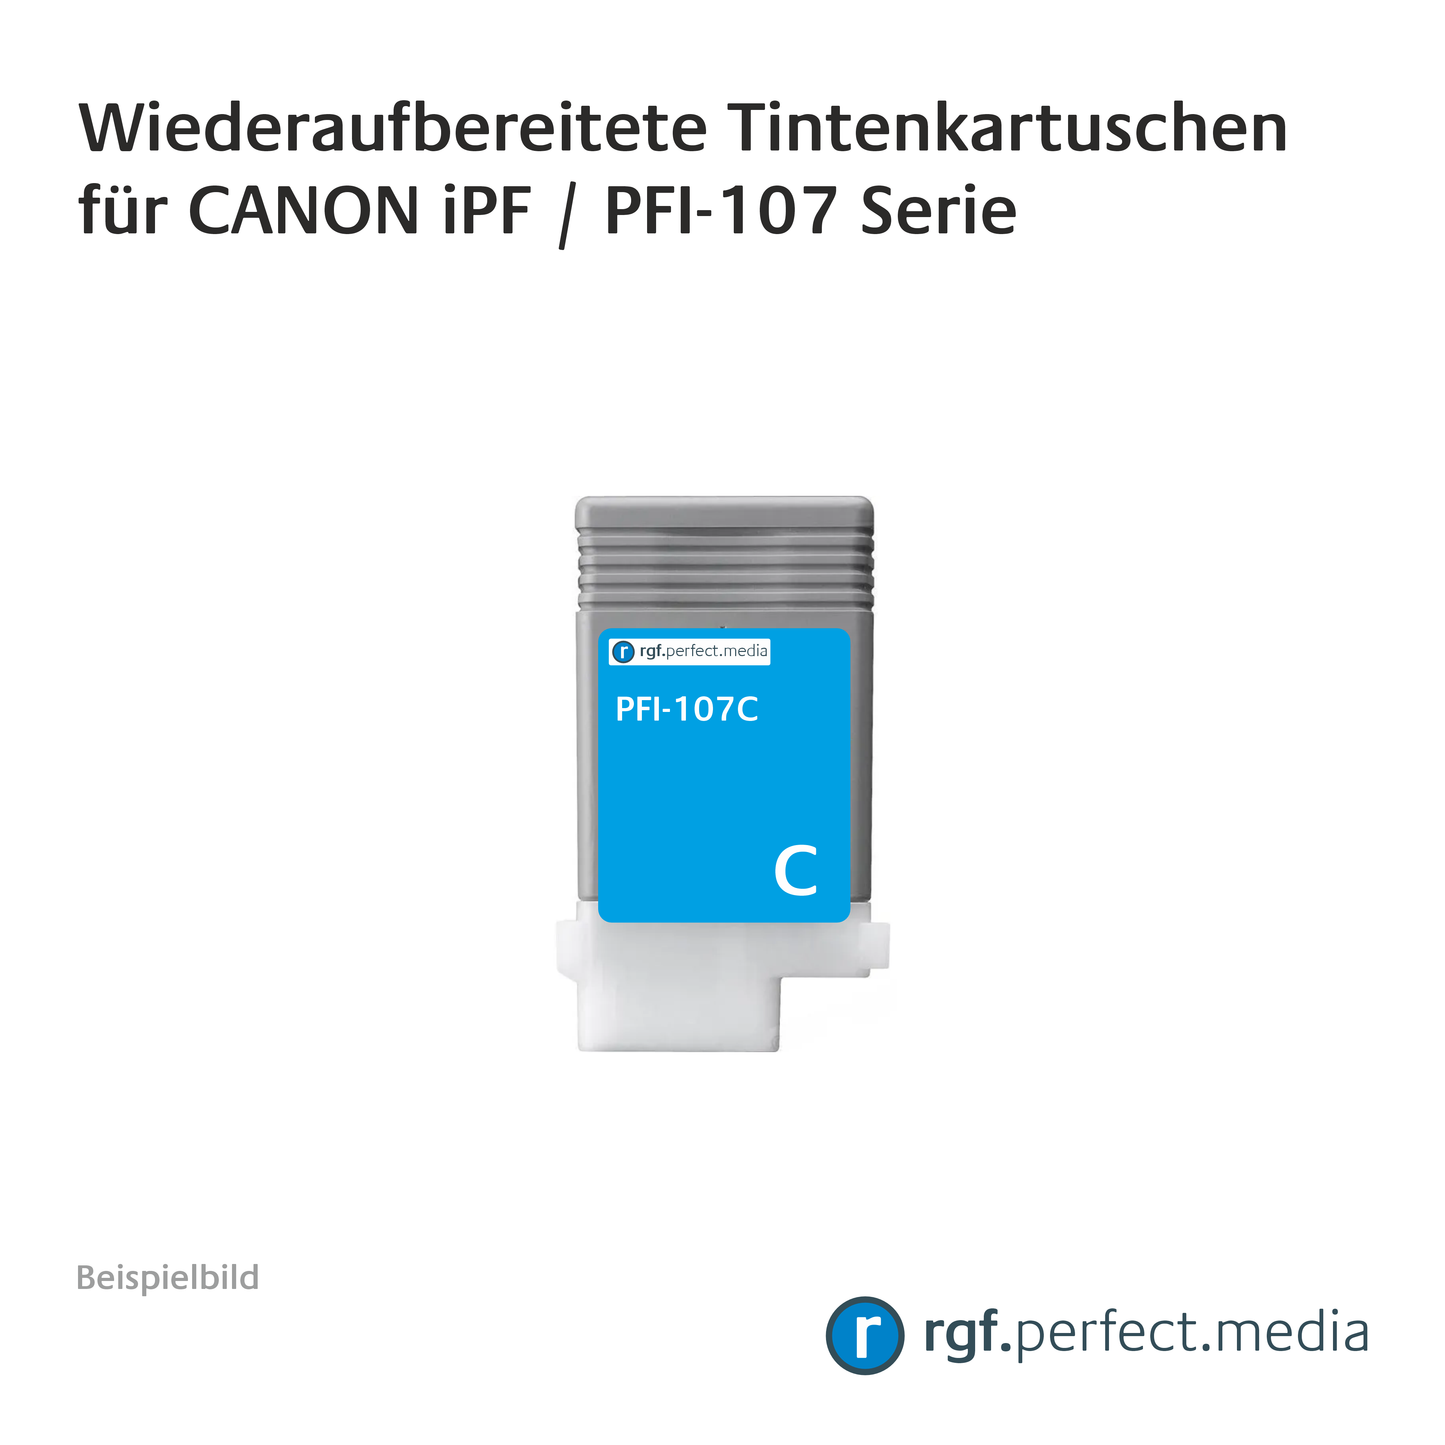 Wiederaufbereitete Tintenkartuschen No.107 Serie kompatibel für Canon iPF - Serie